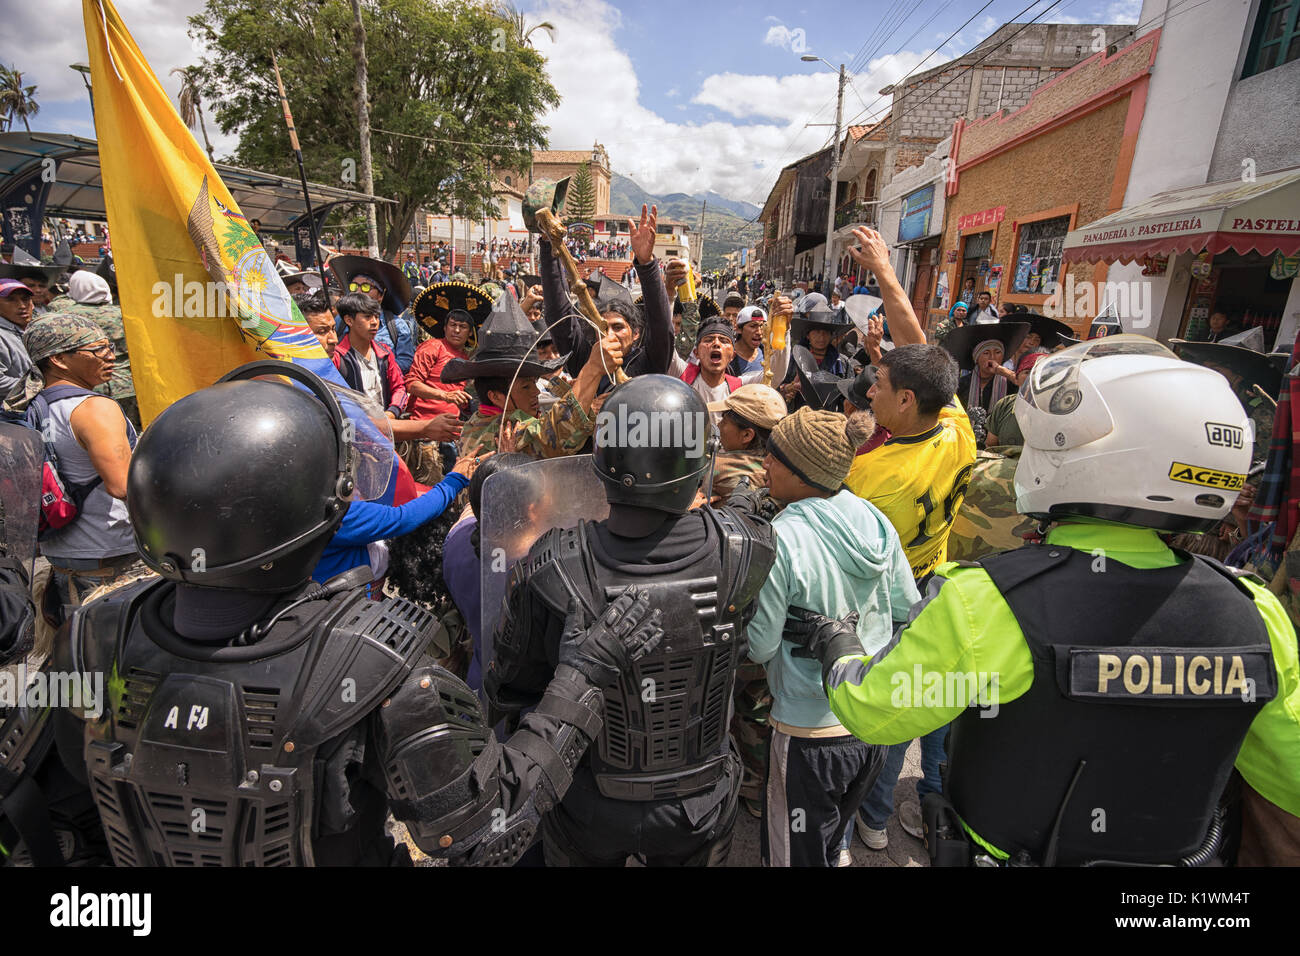 La police anti-émeute en action à Cotacachi Imbabura Équateur pendant la parade de l'Inti Raymi au solstice d'été Banque D'Images